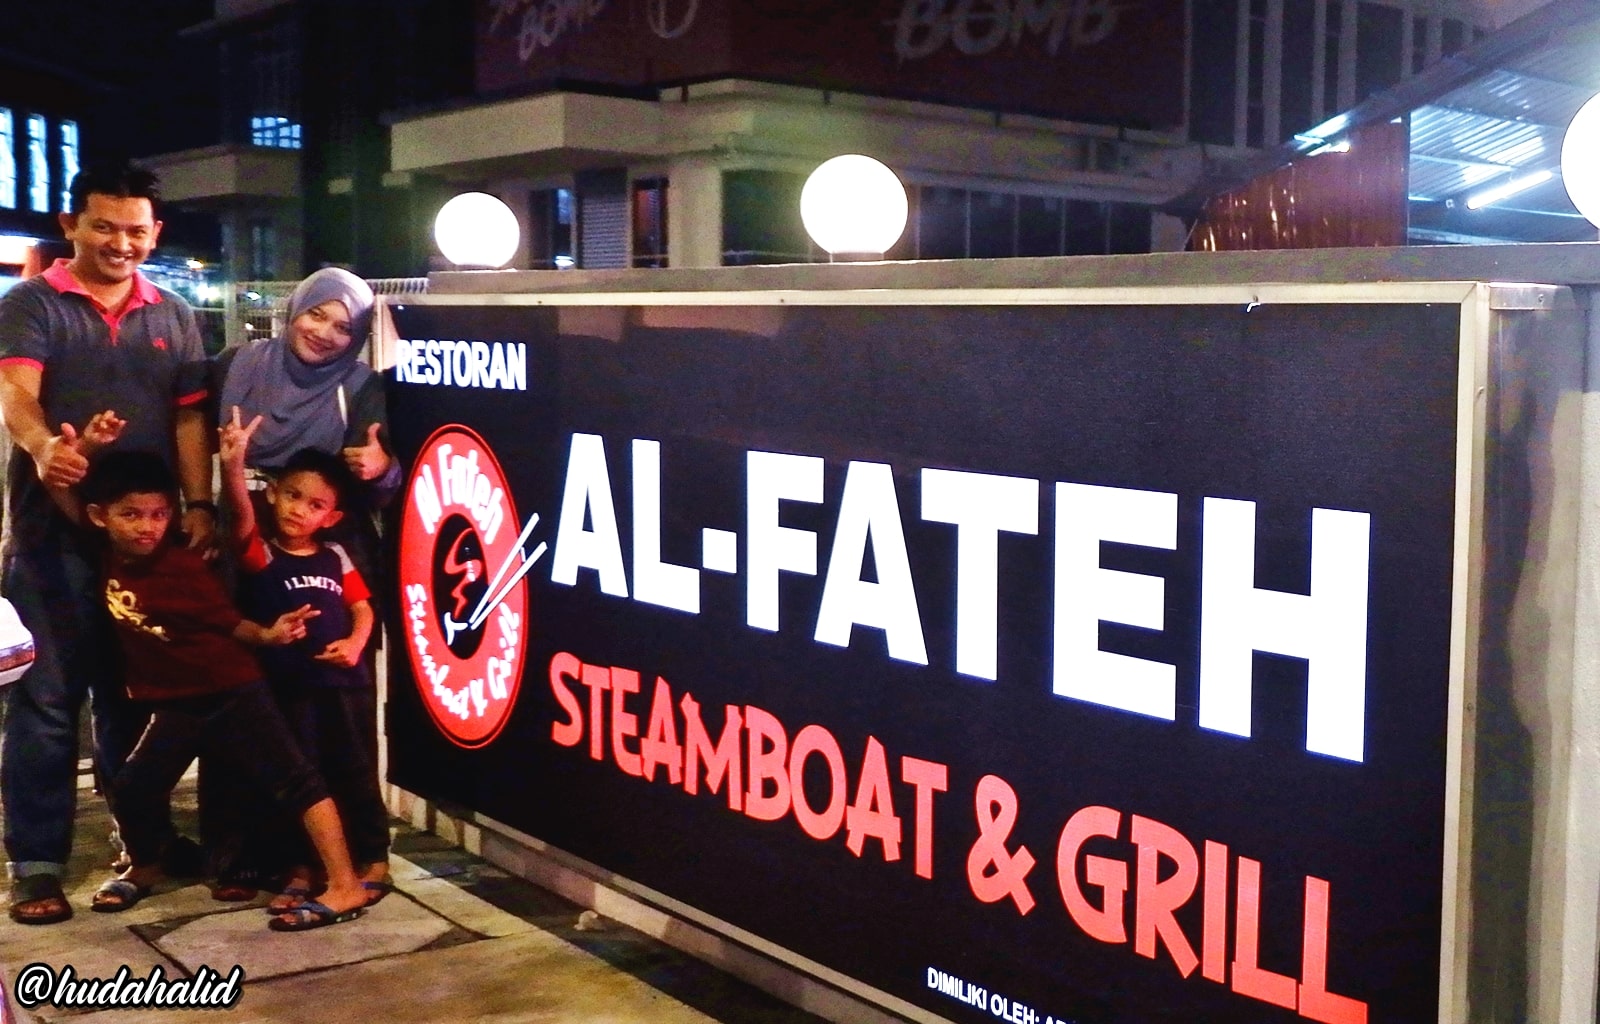 Al fateh steamboat klang